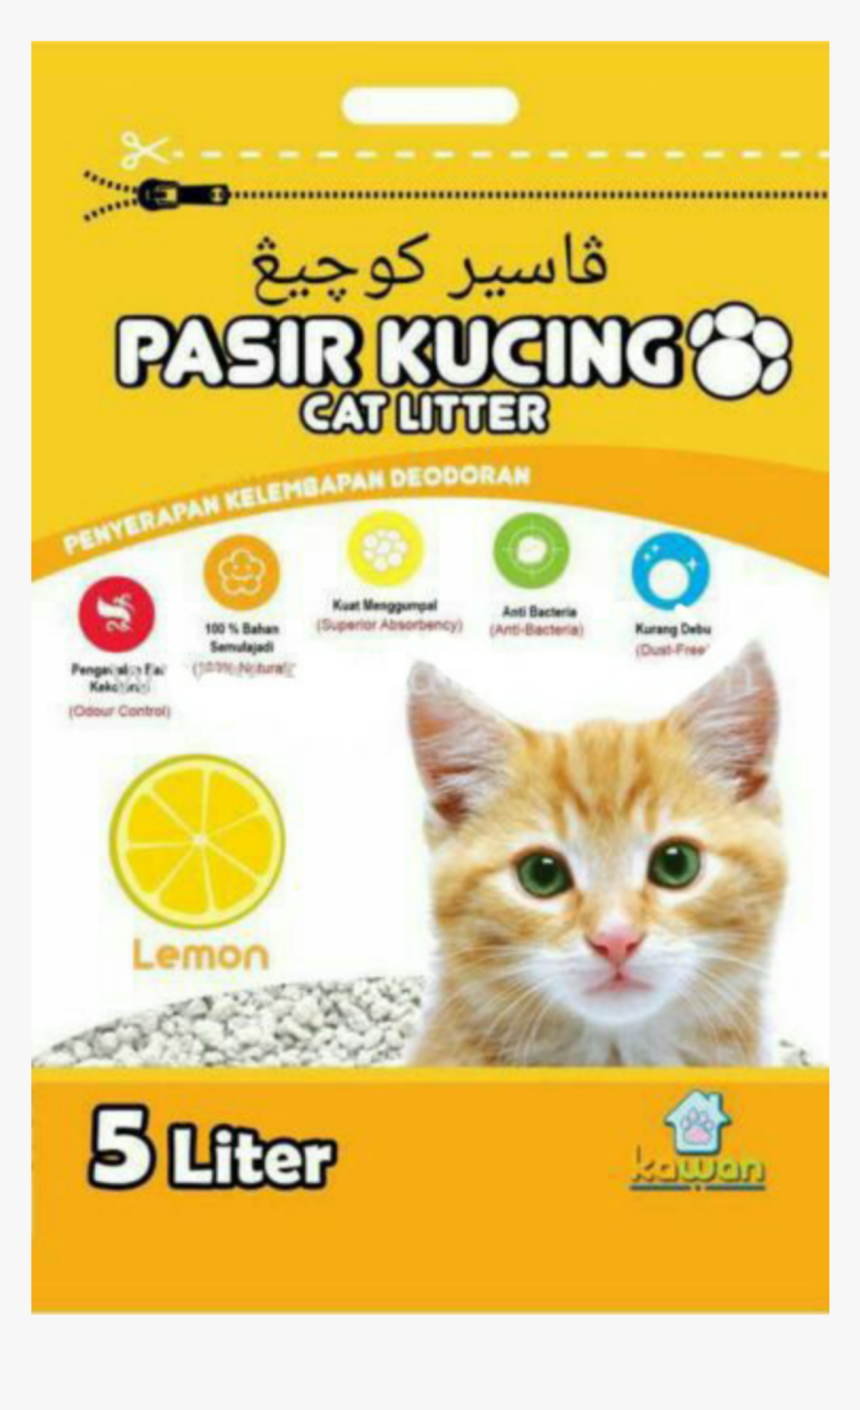 Picsart 10 21 - Cat, HD Png Download - kindpng